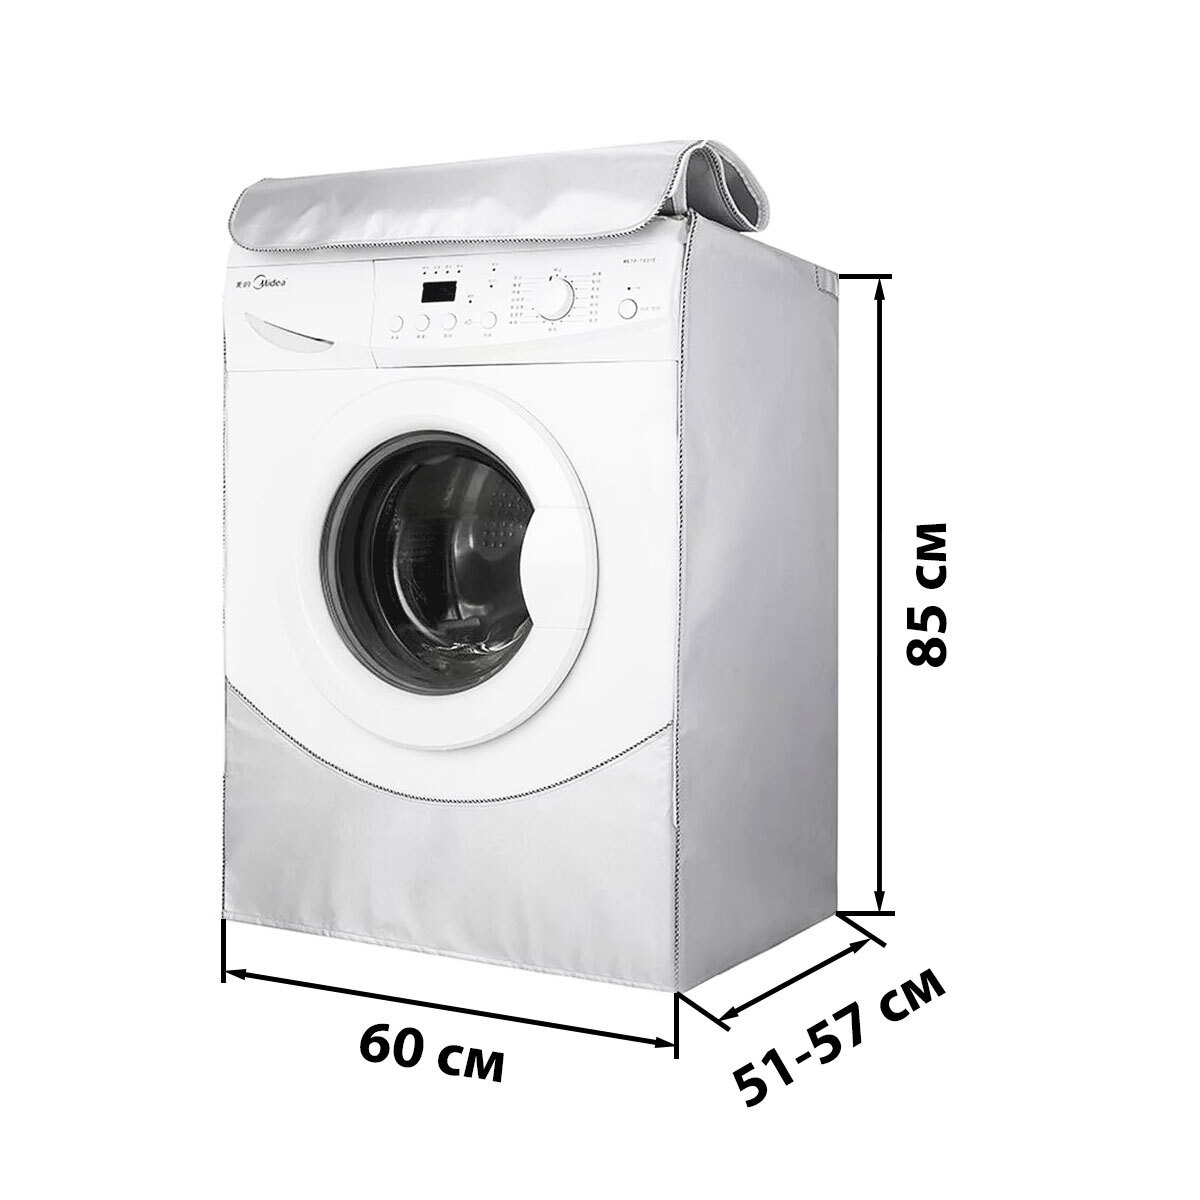 Подходит для стиральных машинок глубиной от 51 до 57 см